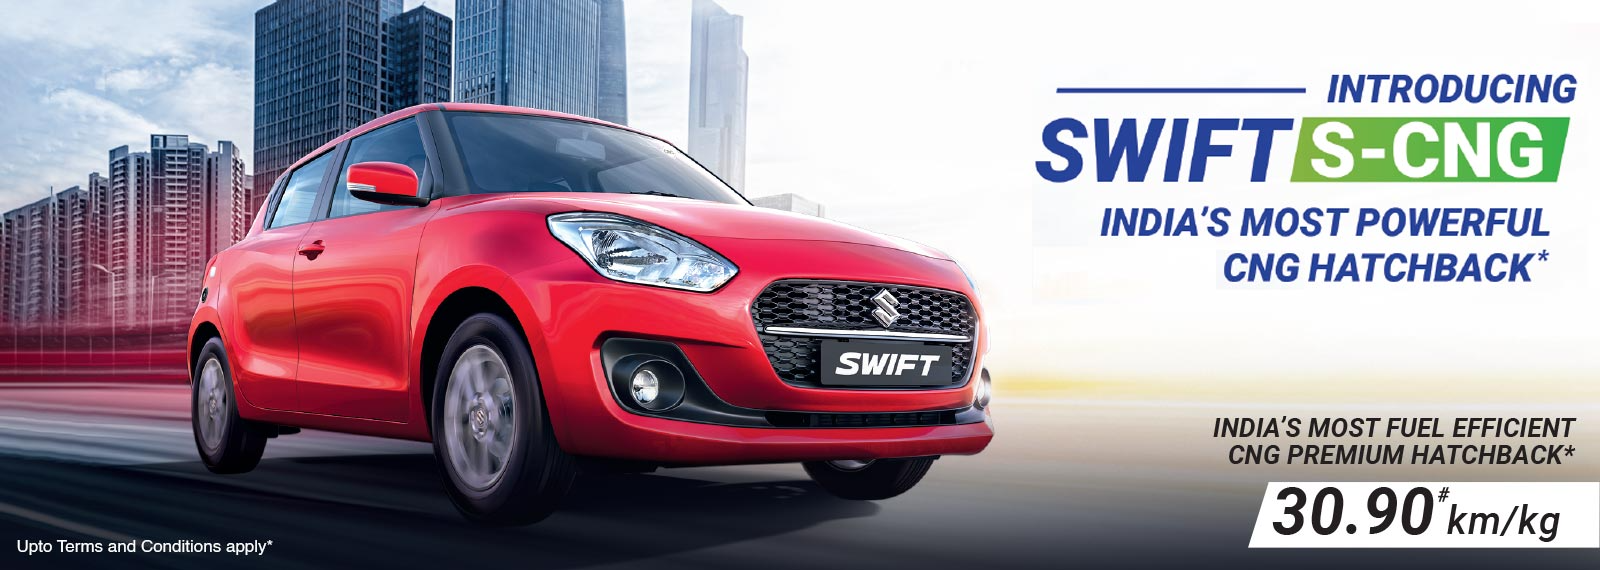 Maruti-Suzuki-Swift-Arena Auto Vibes (Dinco 4 Wheels)  Bawal Road, Rewari